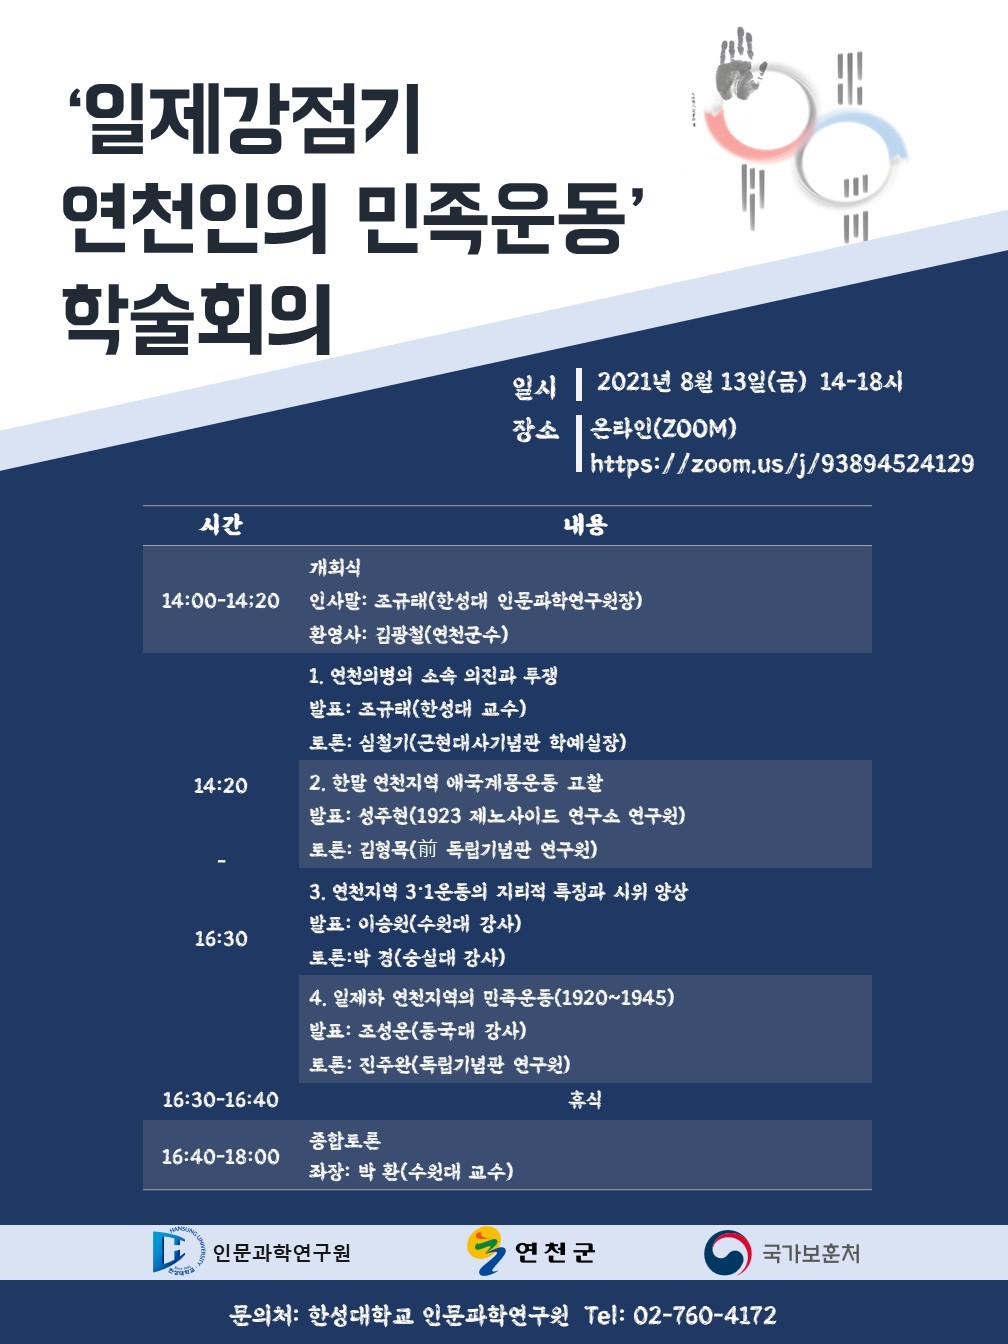 연천군, ‘일제강점기 연천인의 민족운동’ 학술대회 개최 이미지 1 - 본문에 자세한설명을 제공합니다.